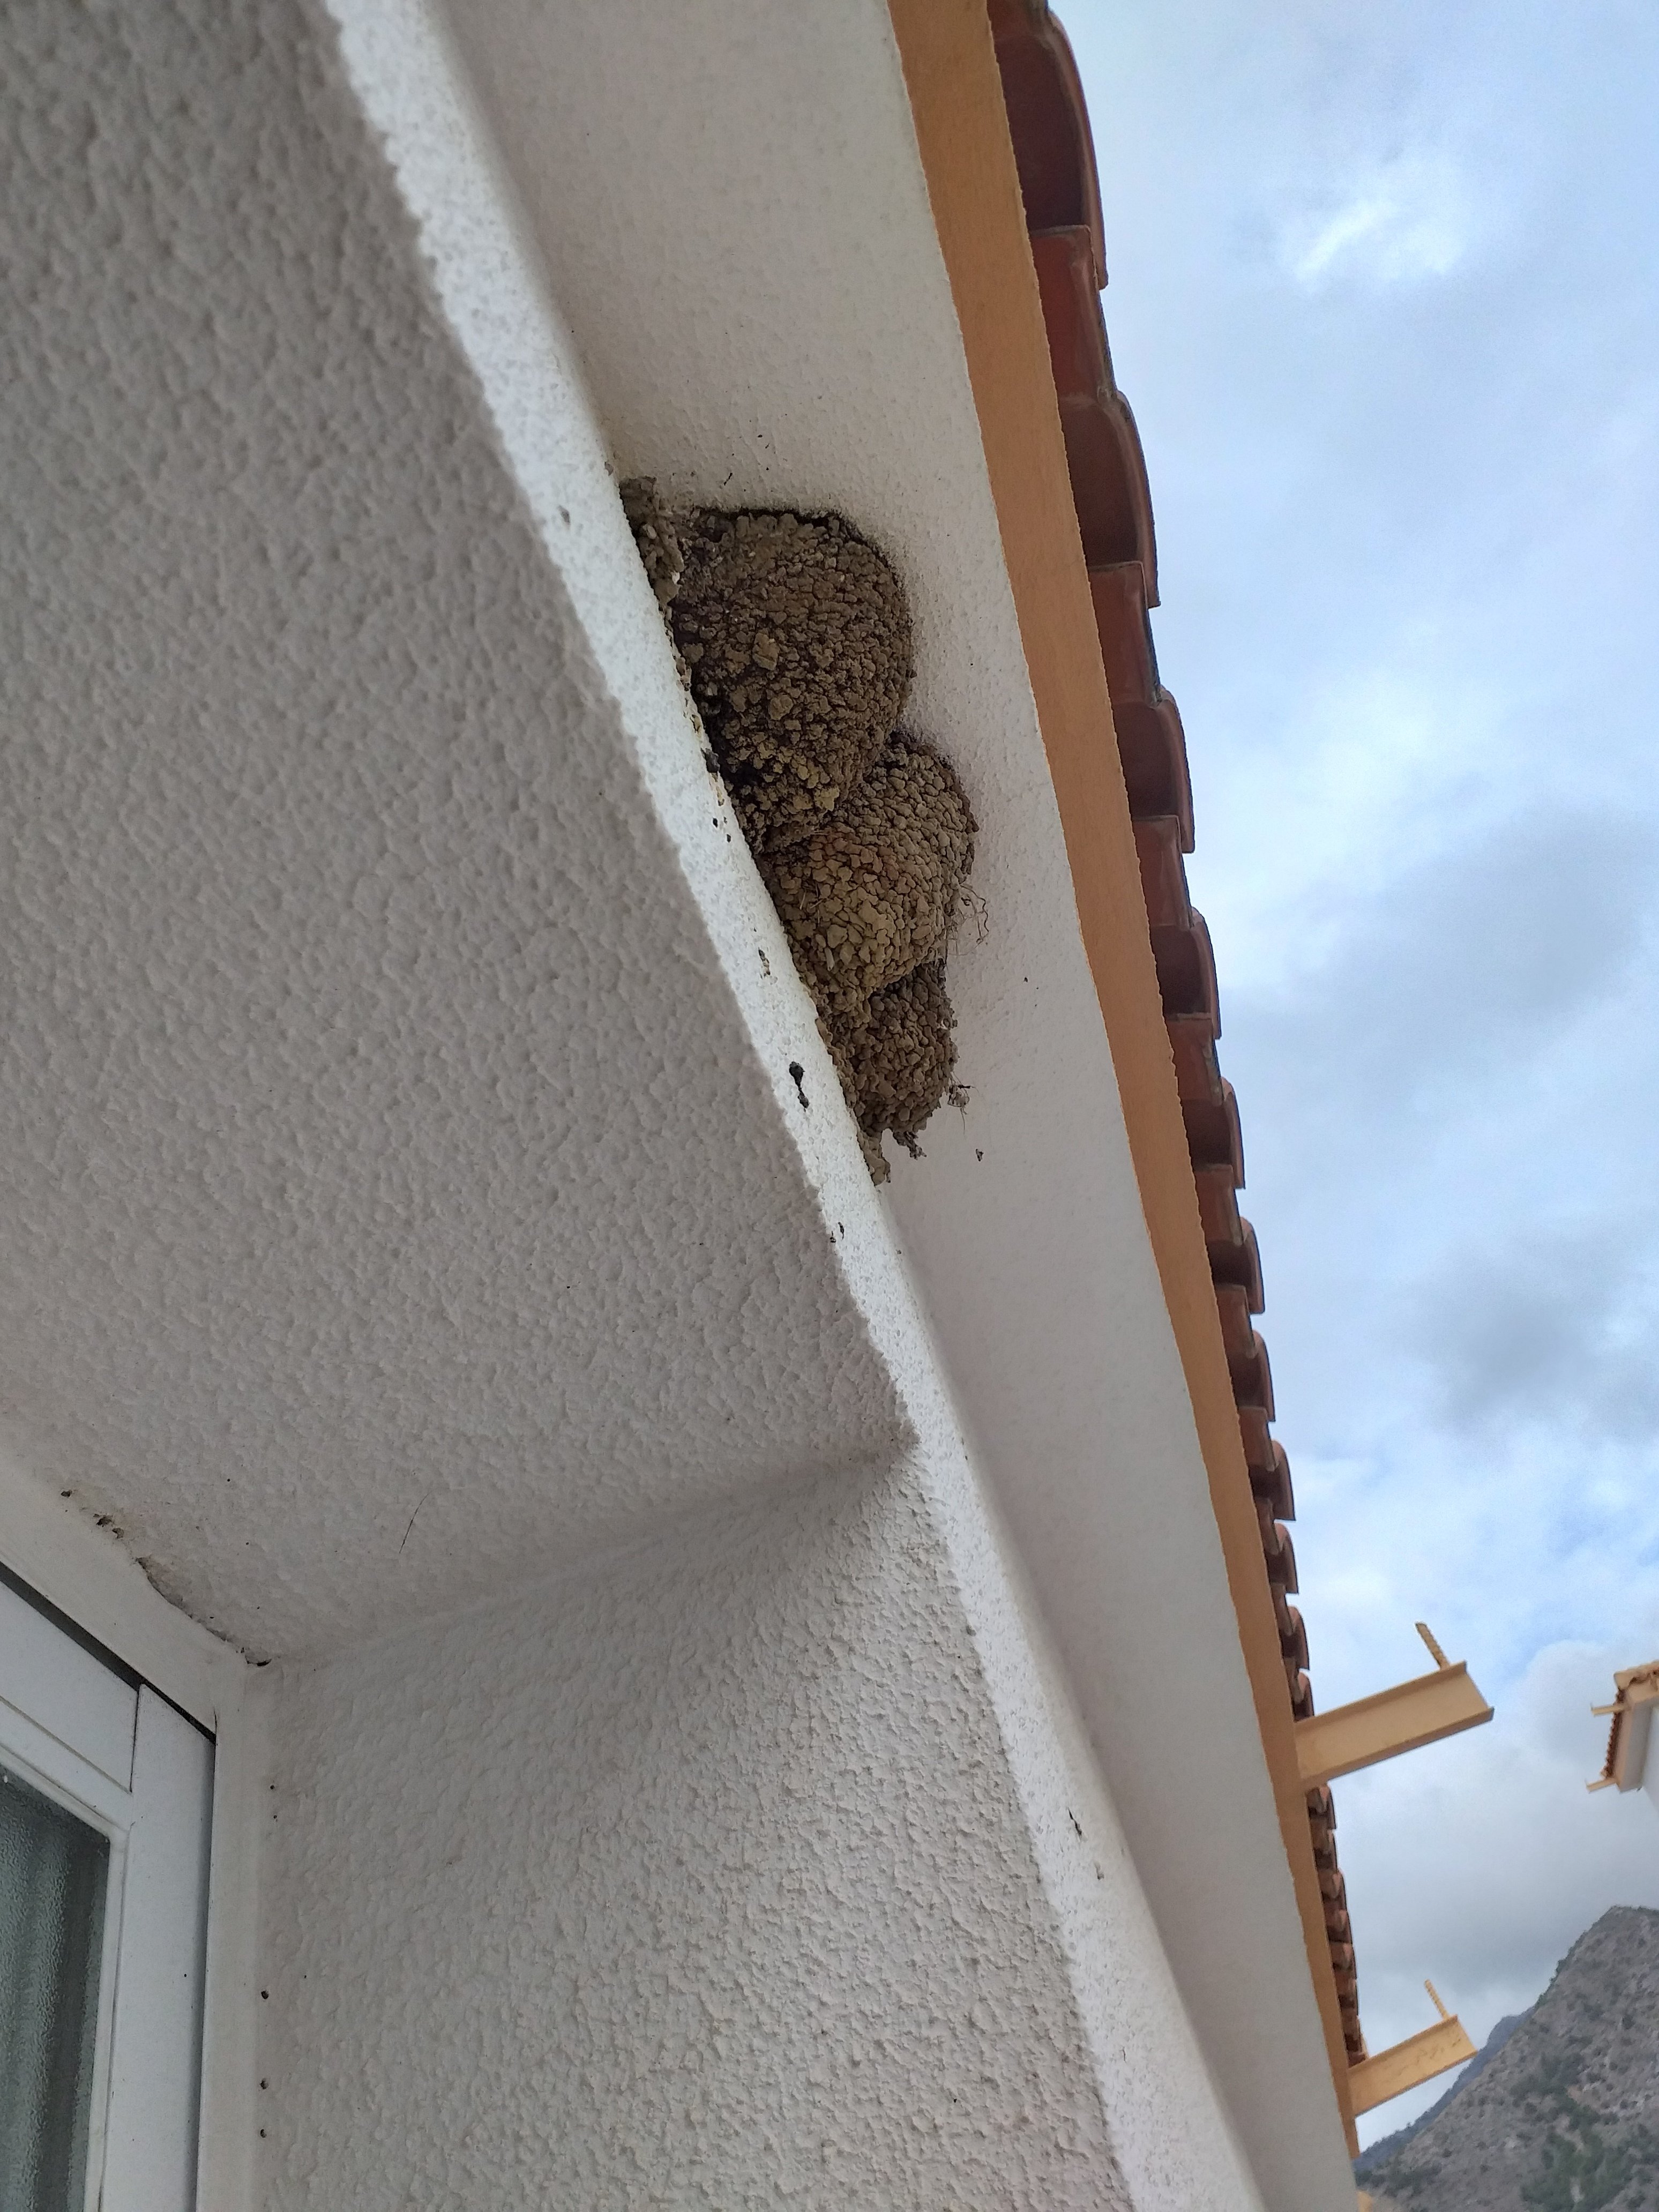 Tengo un nido de golondrinas en la ventana de la cocina